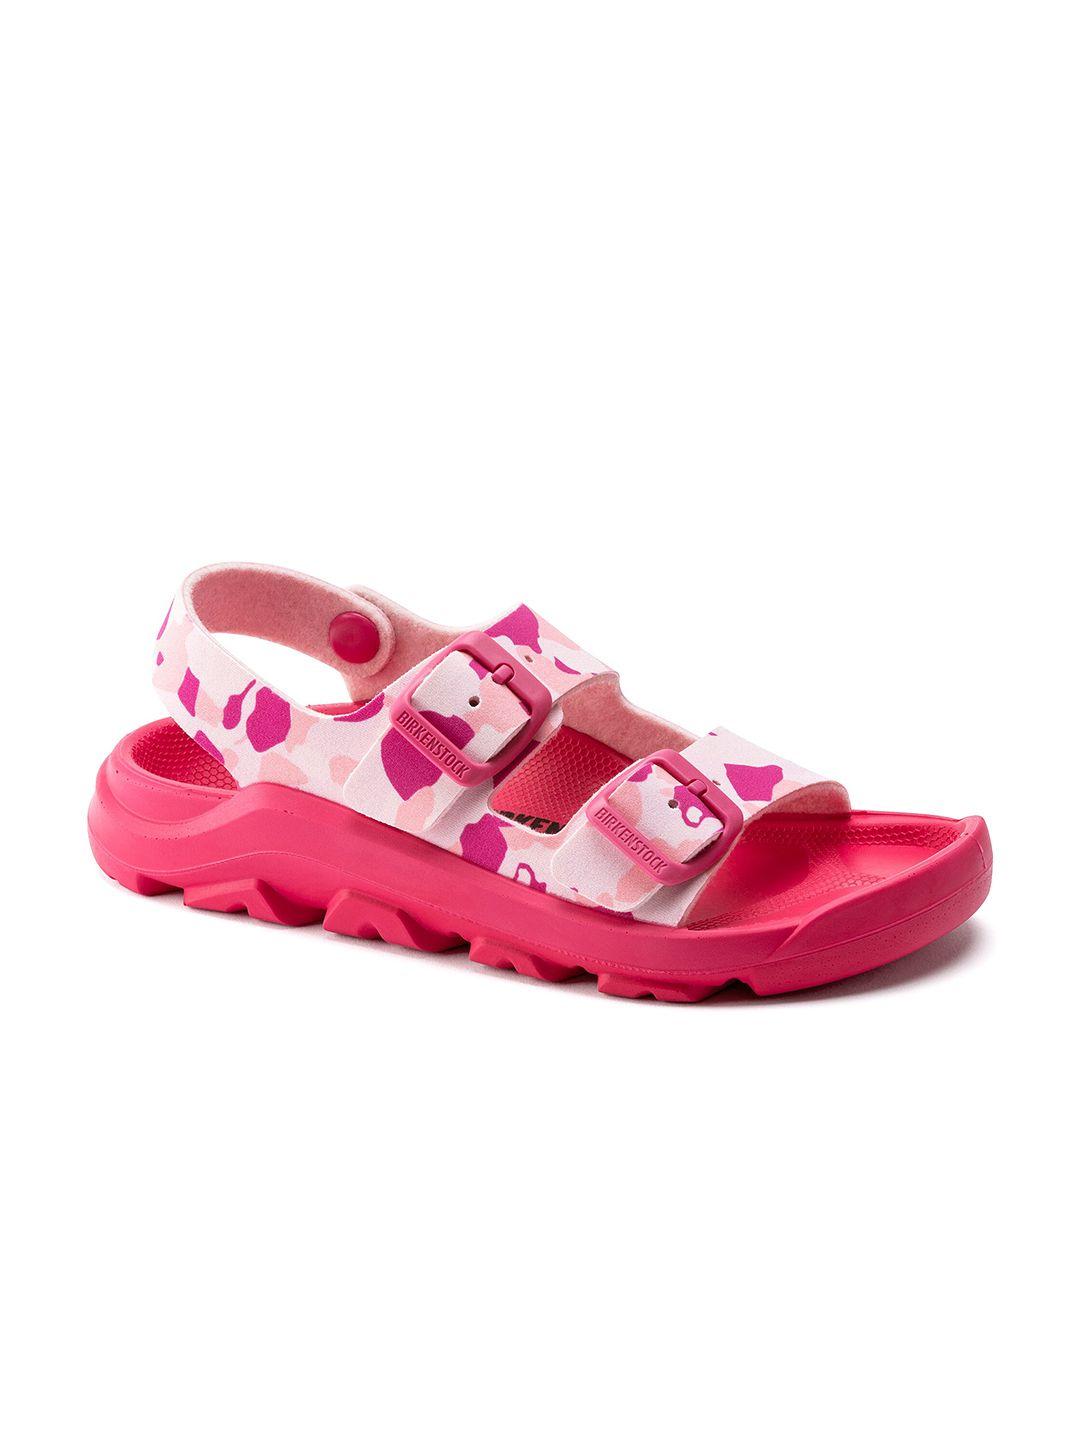 birkenstock boys narrow width pink mogami birko-flor comfort sandals